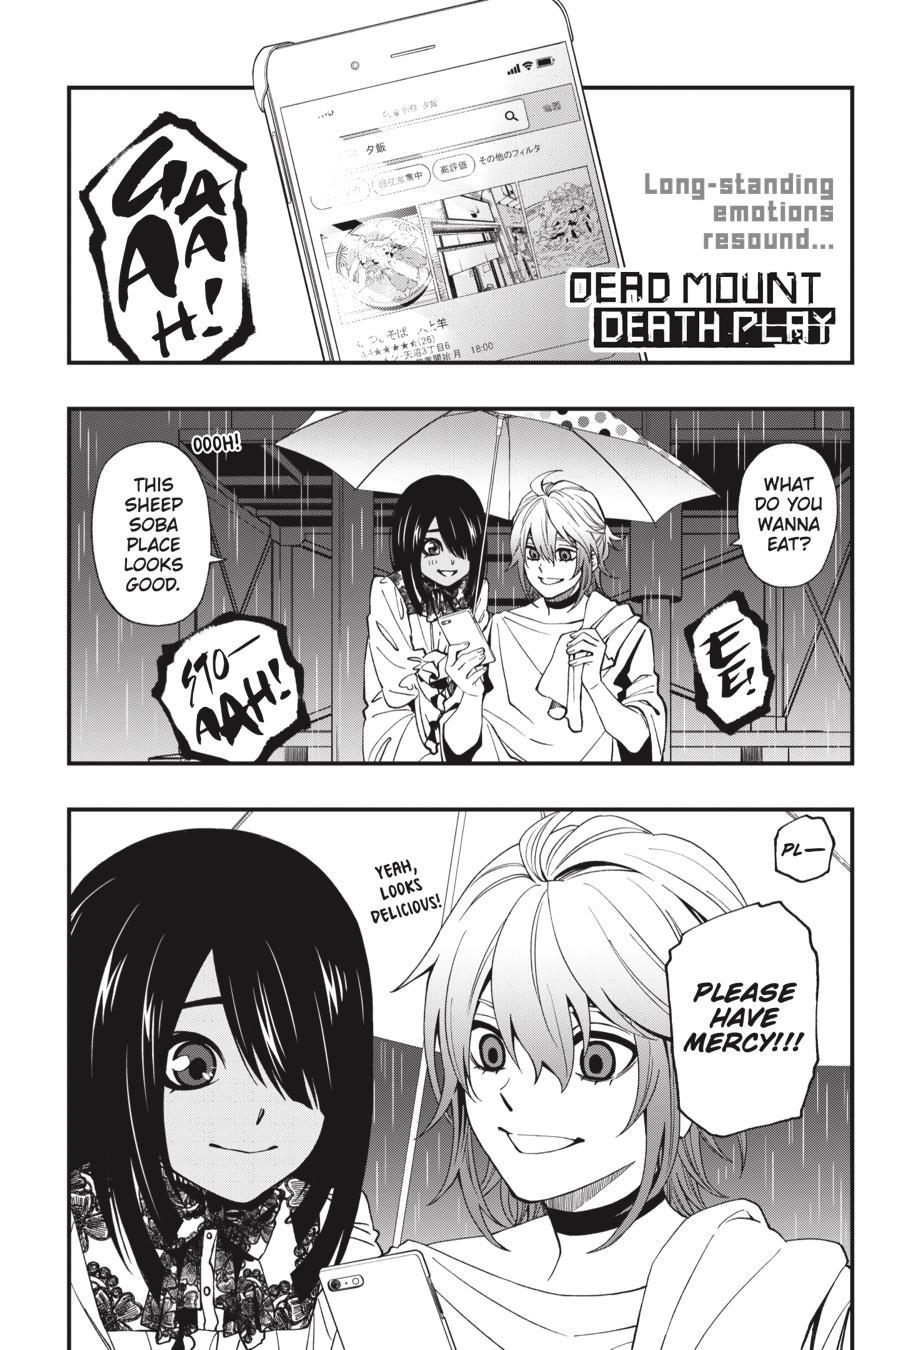 Dead Mount Death Play Manga Volume 4